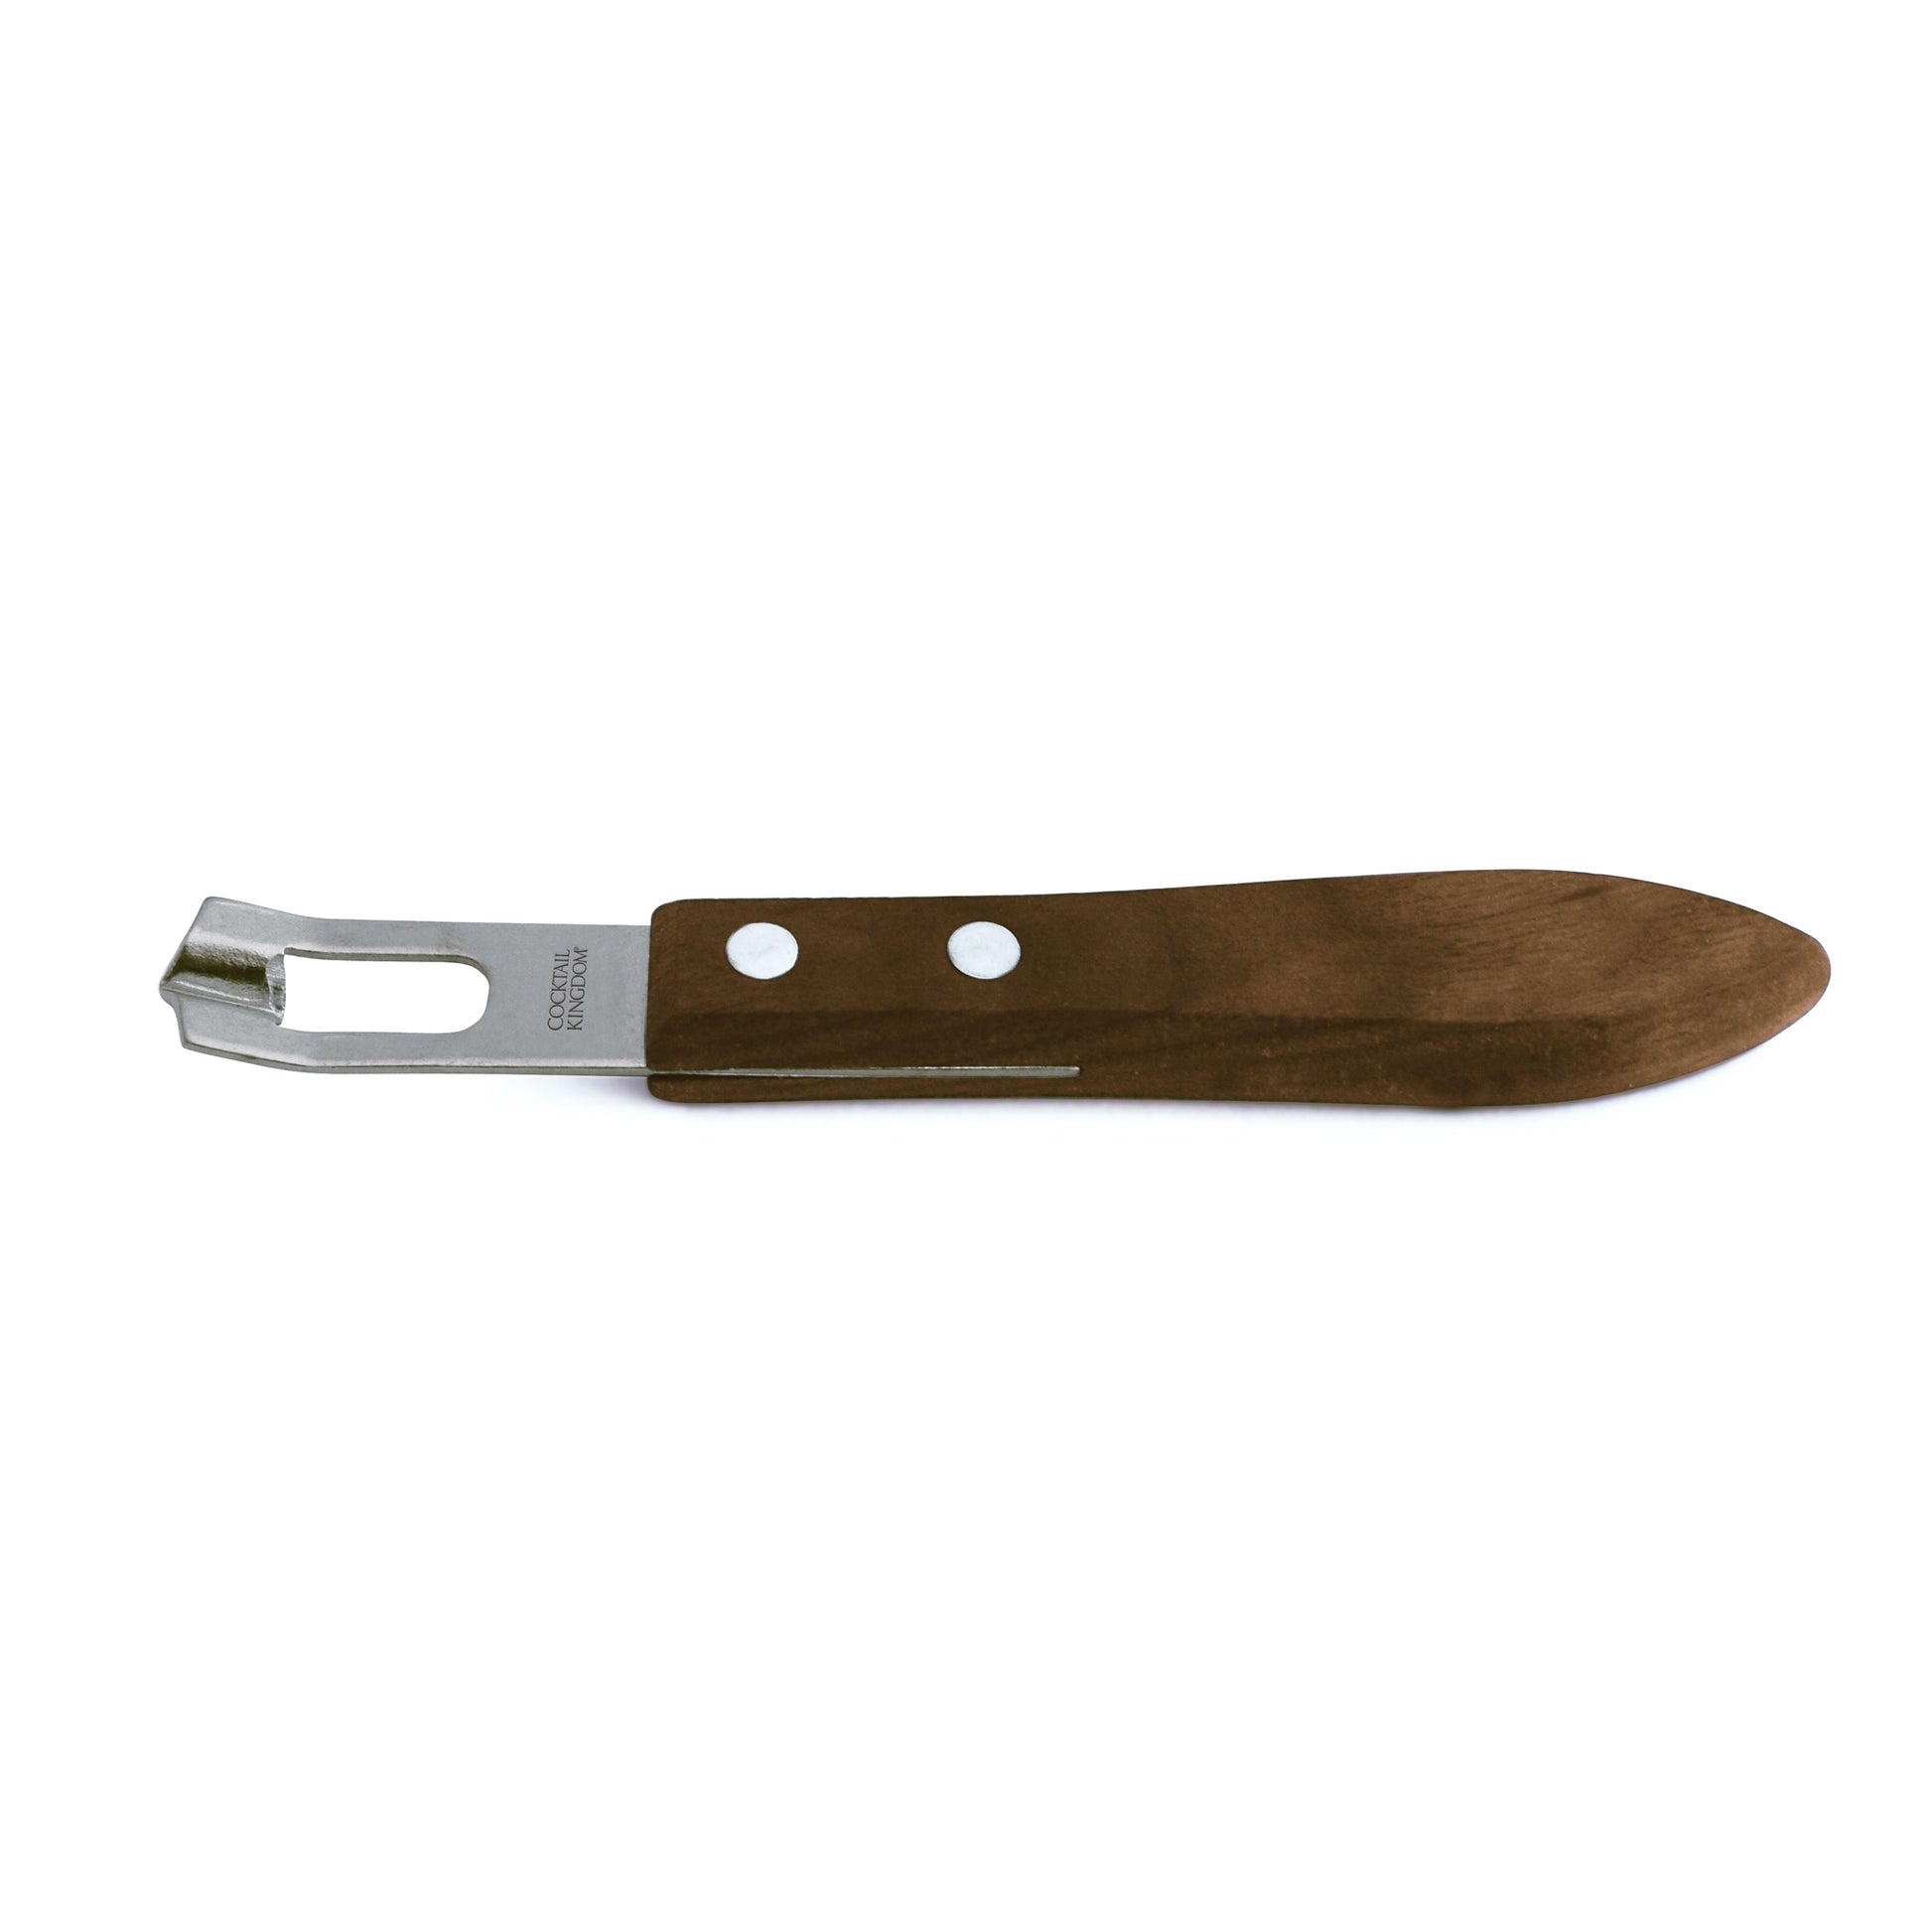 CHANNEL KNIFE – BLACK WALNUT HANDLE